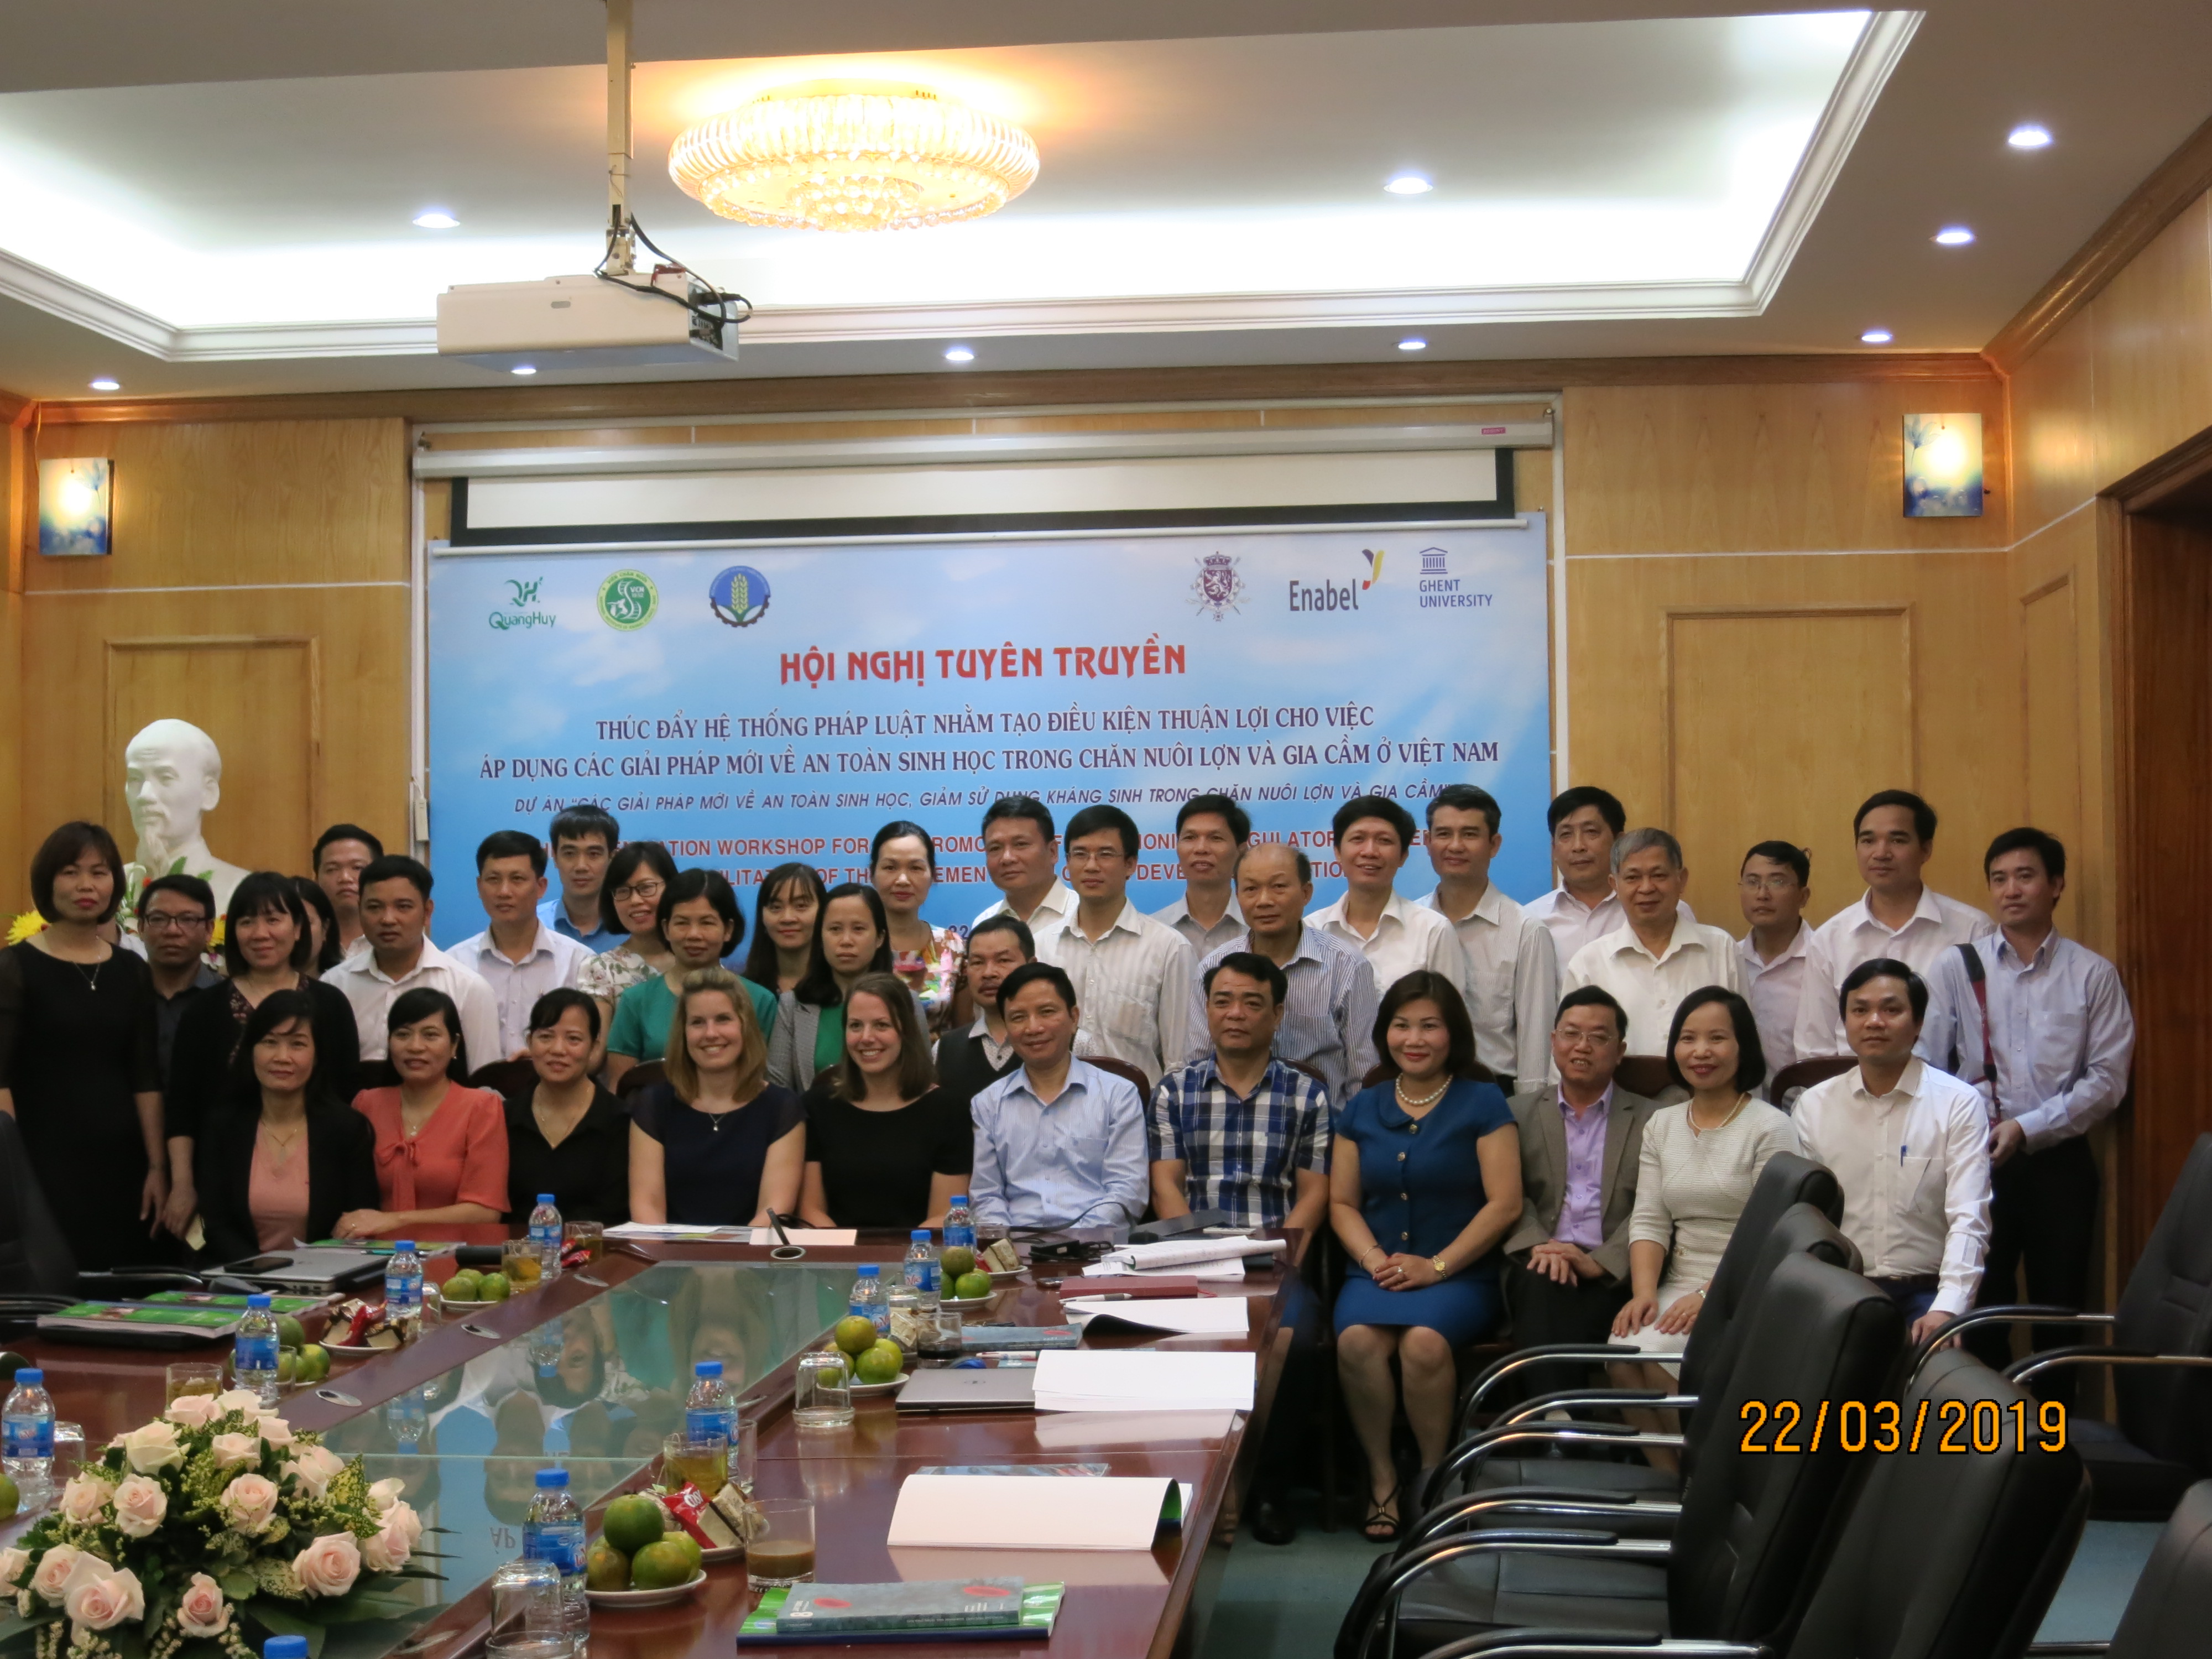 Hội nghị tuyên truyền “Thúc đẩy hệ thống pháp luật nhằm tạo điều kiện thuận lợi cho việc áp dụng các giải pháp mới về an toàn sinh học trong chăn nuôi lợn và gia cầm ở Việt Nam”